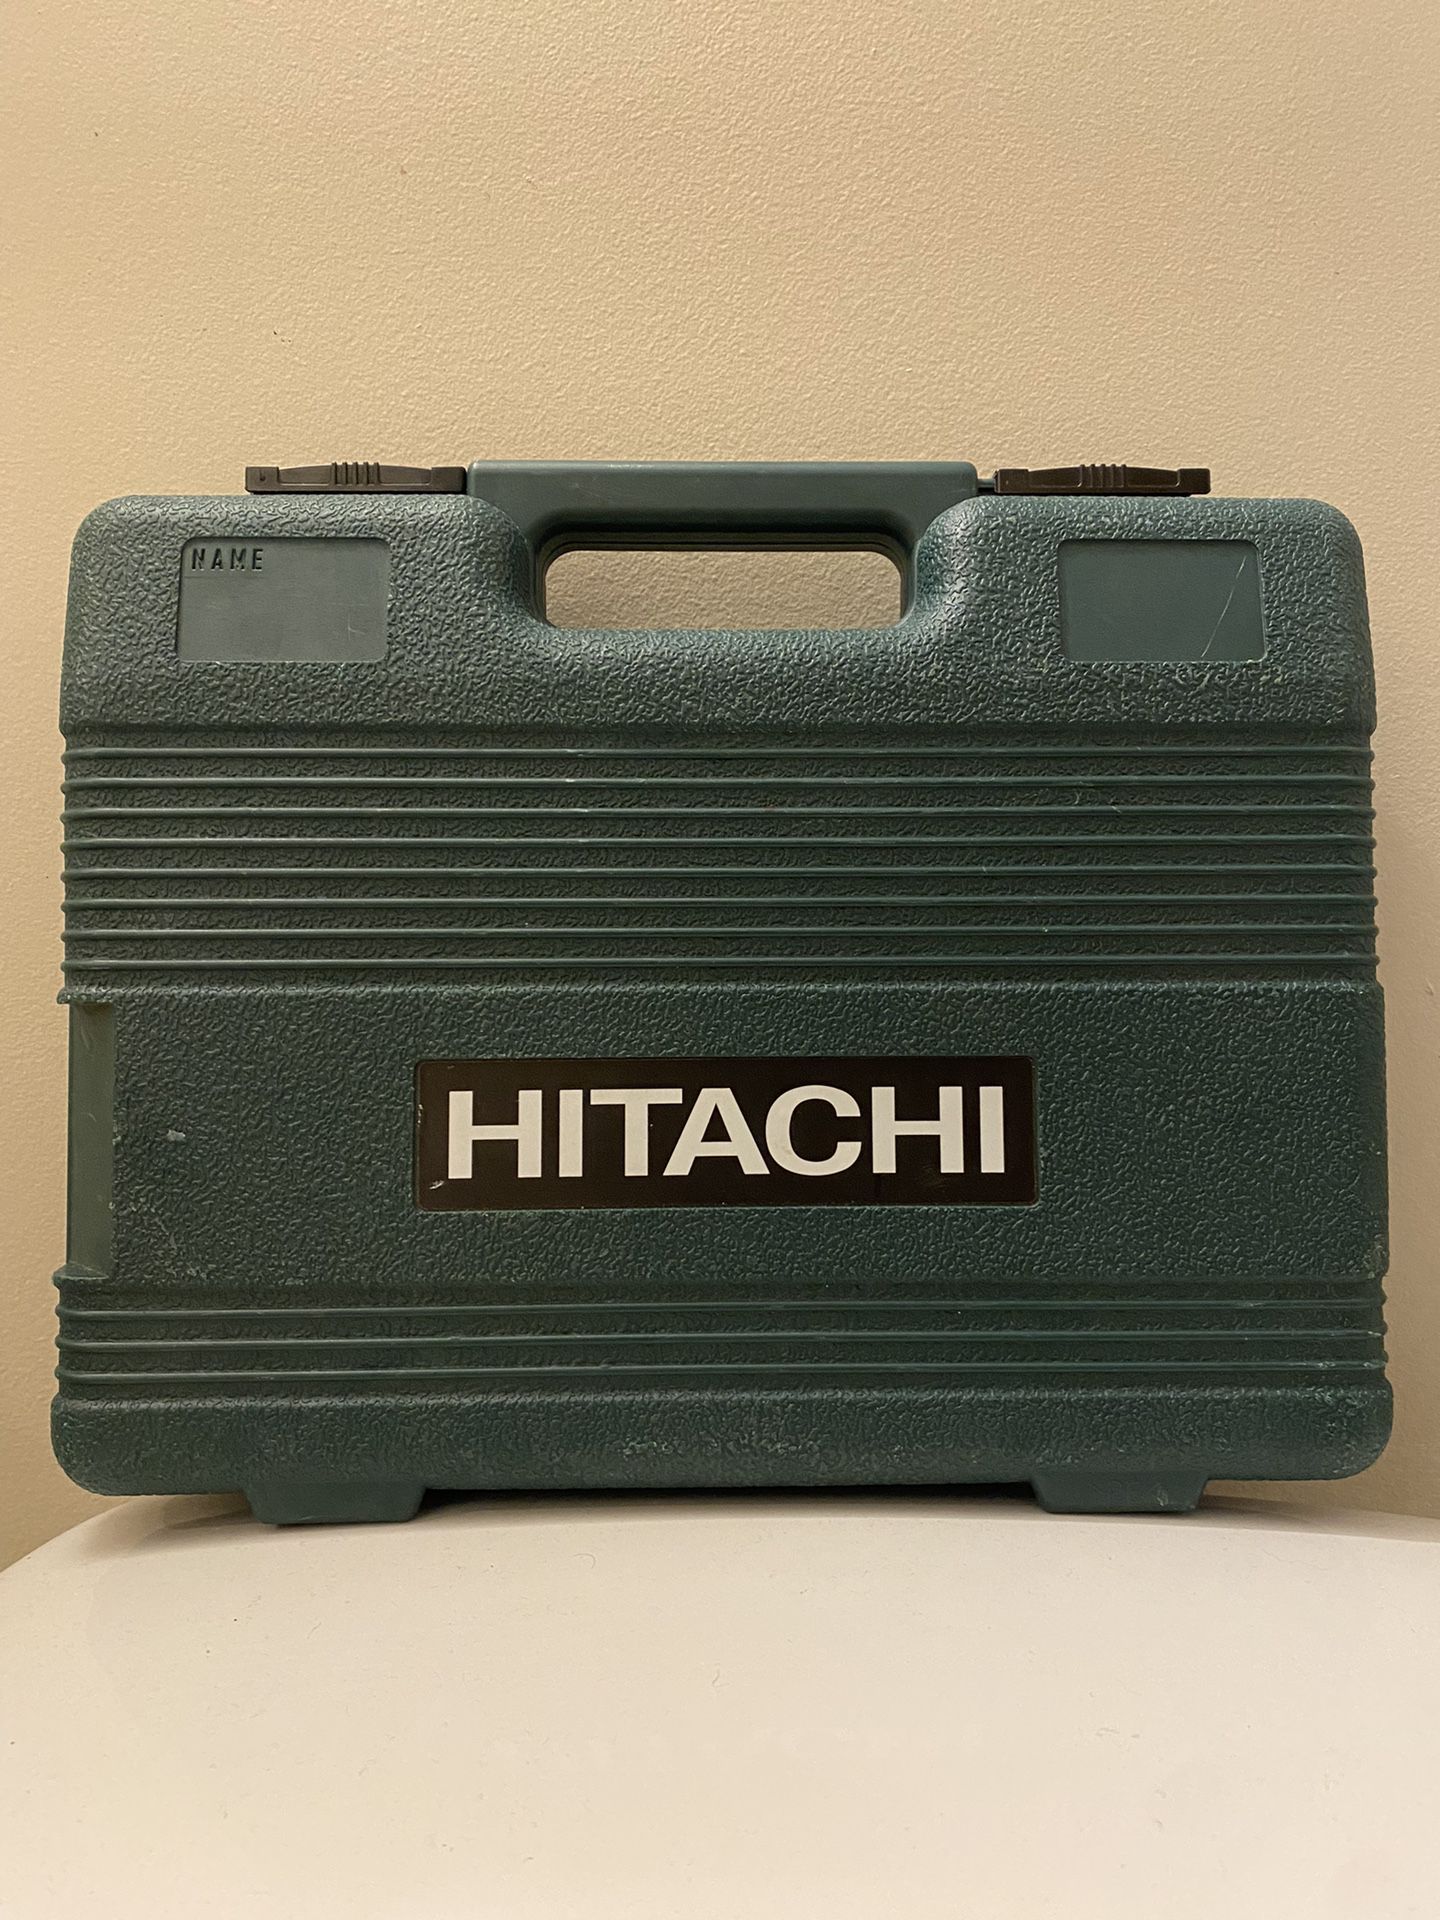 Hitachi Nail Gun 